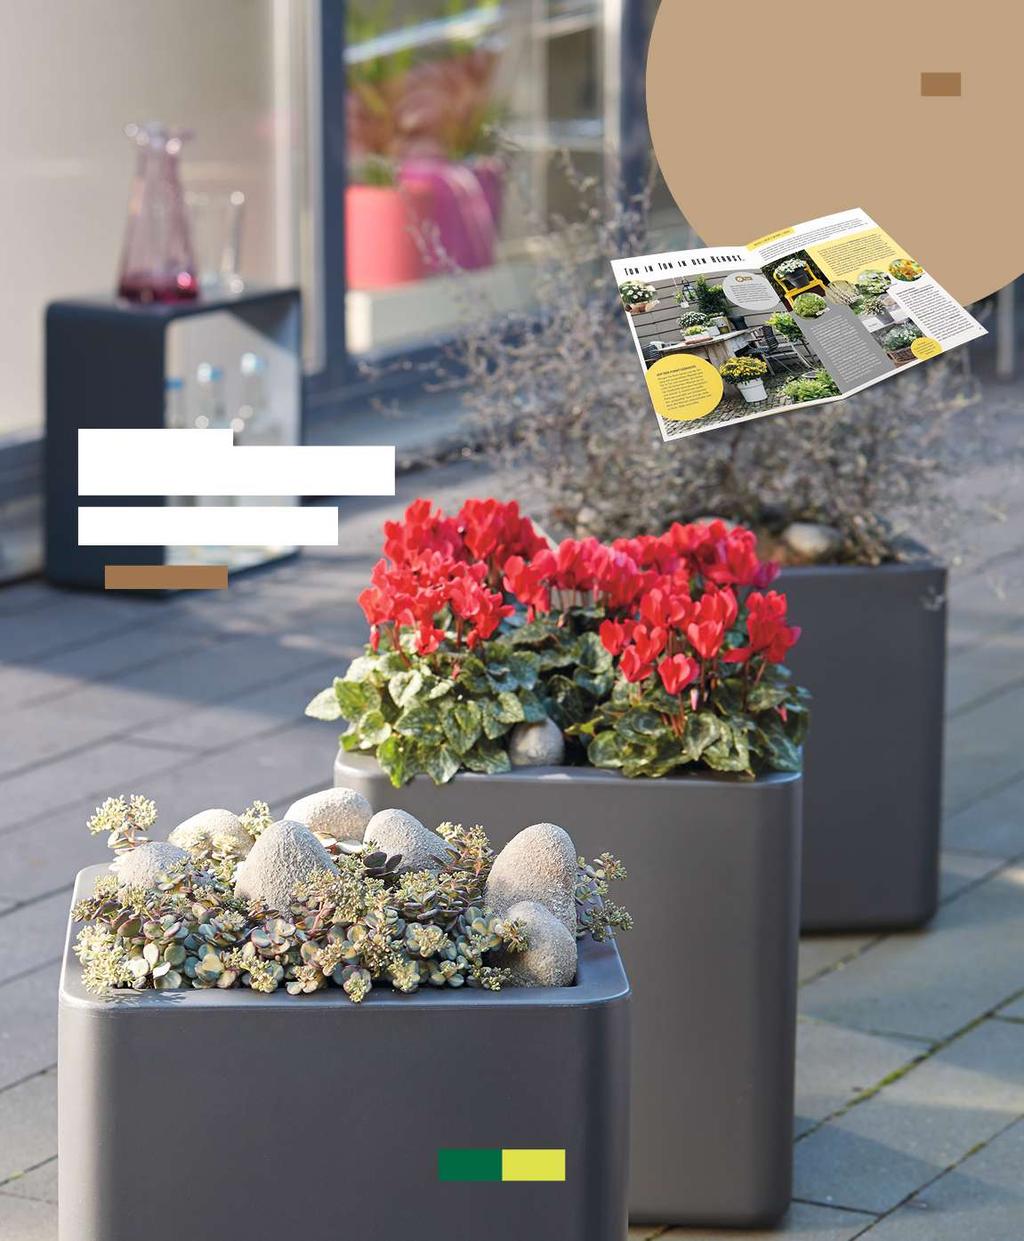 Abb. zeigt mehrere Exemplare Info Noch mehr Ideen für Ihren Ton-in-Ton - Herbstgarten gibt es jetzt in unserem Kundenmagazin "grüne